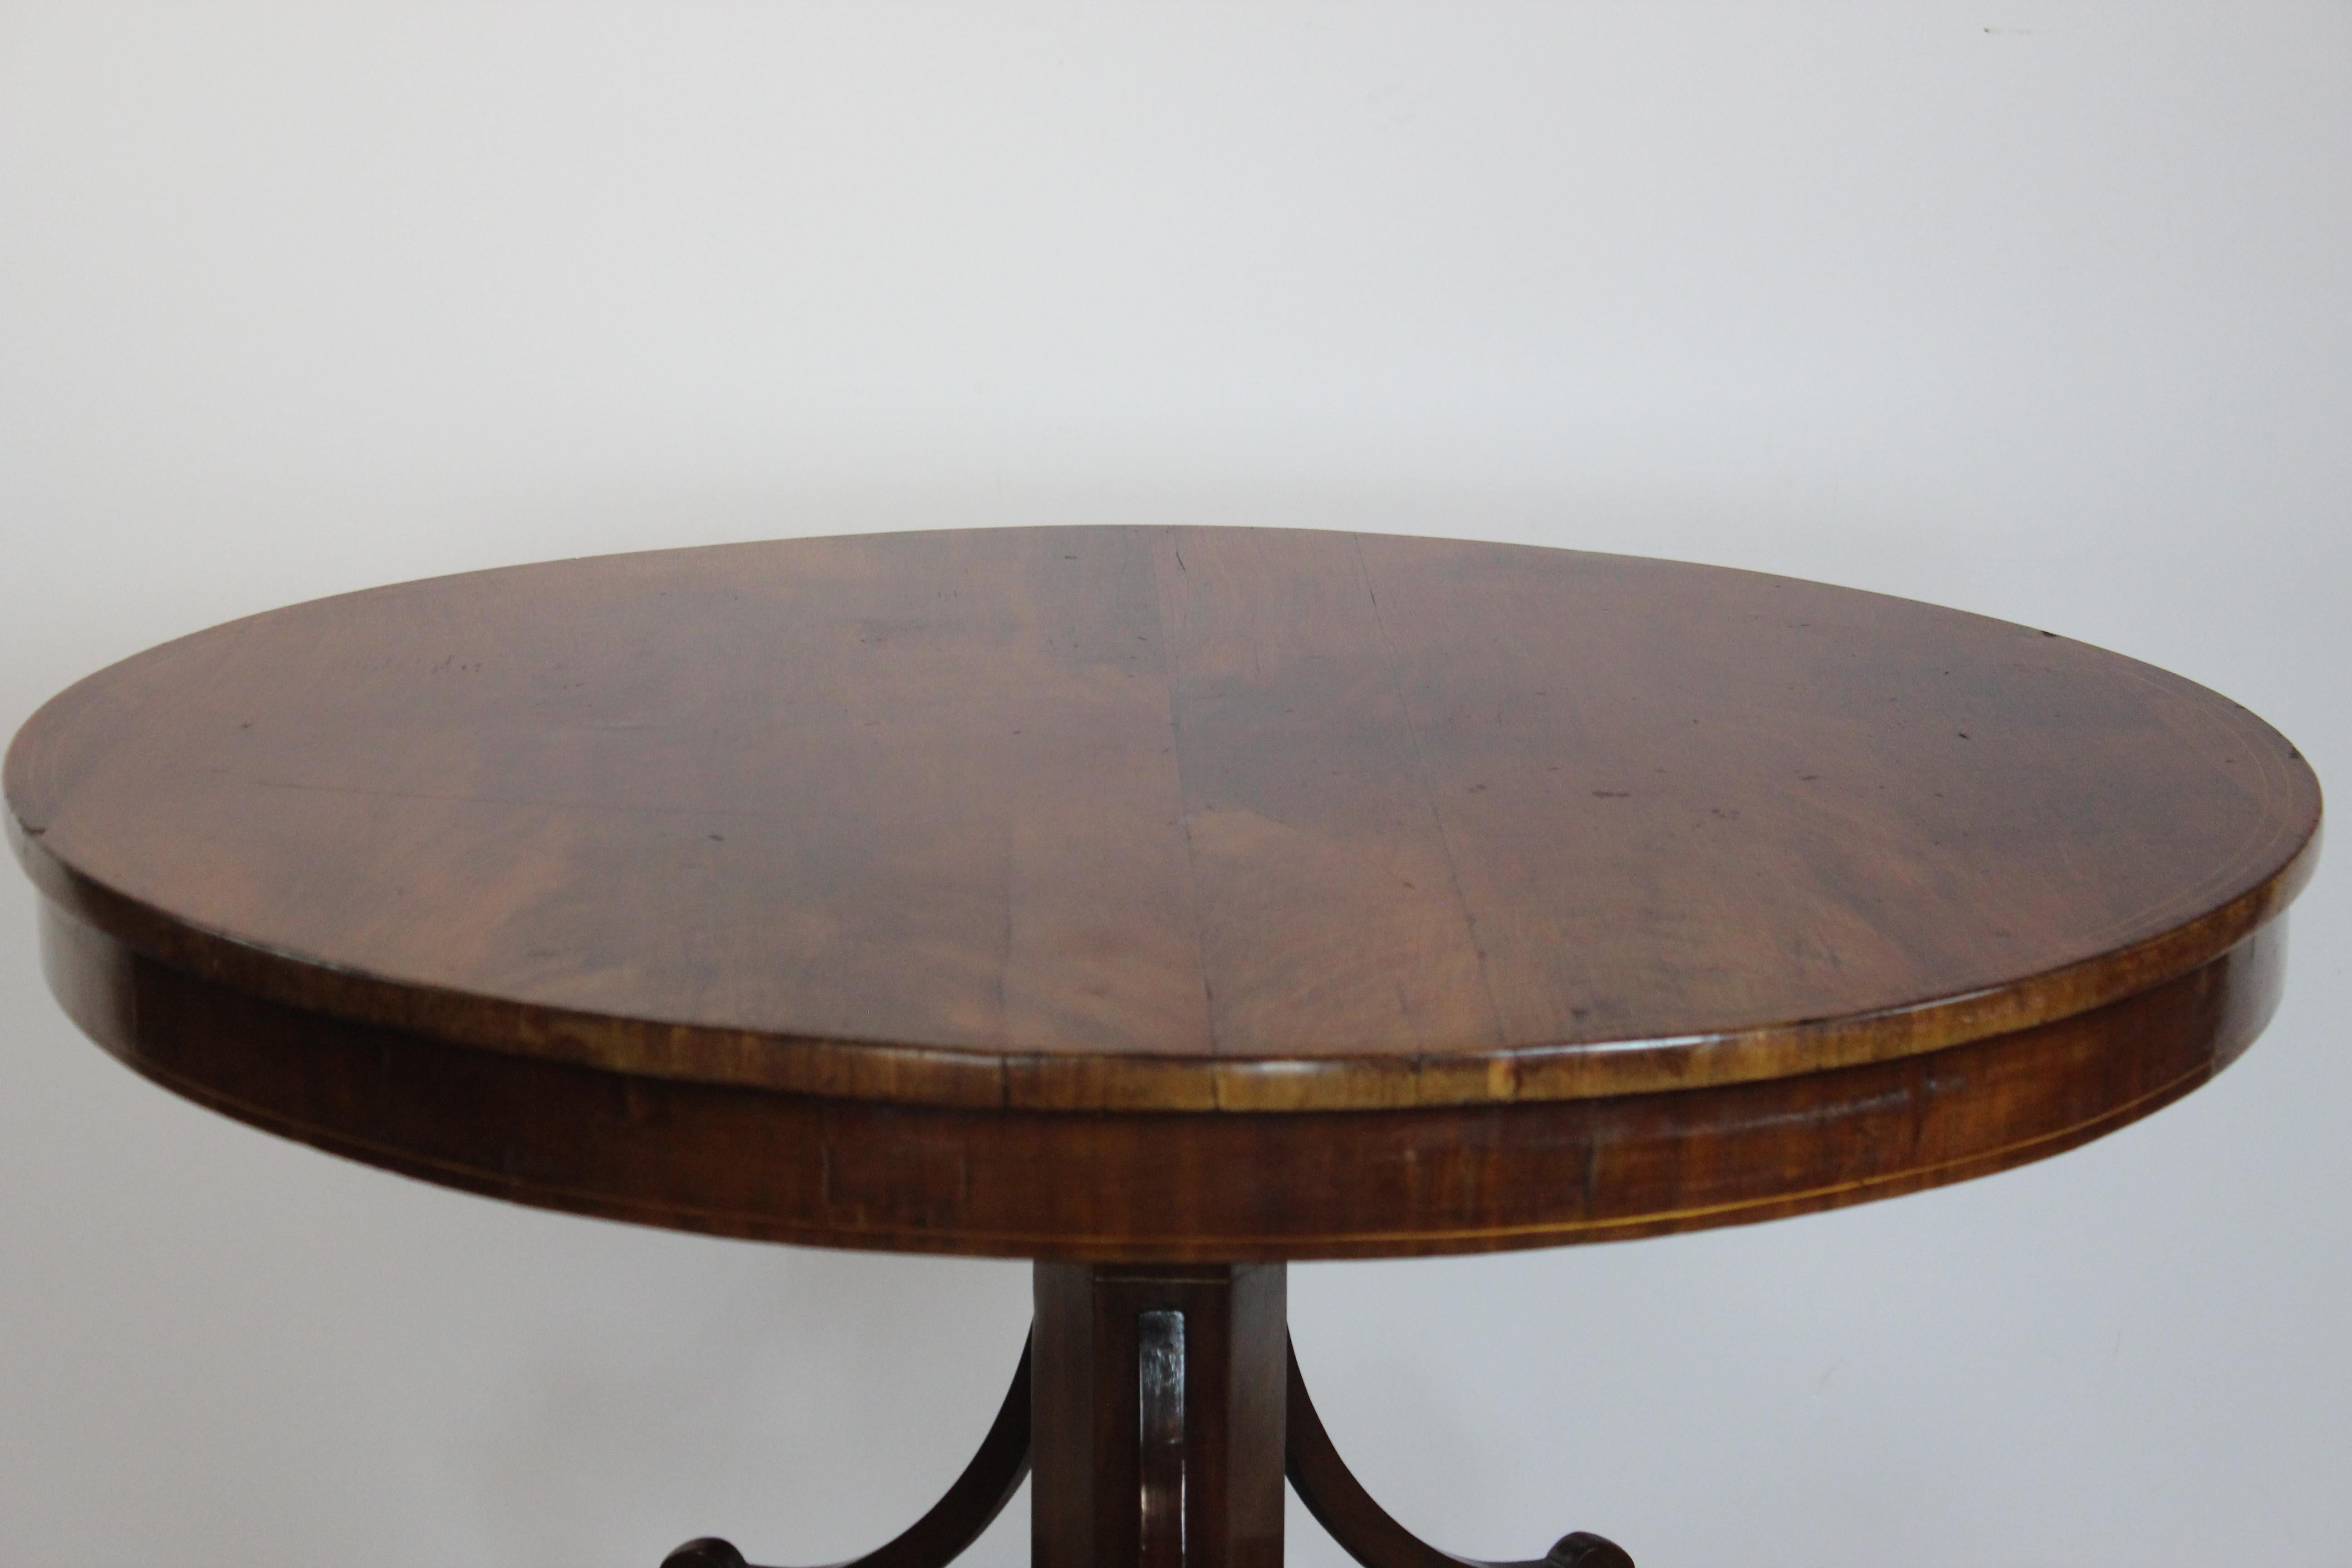 19th century round shape mahogany English table.